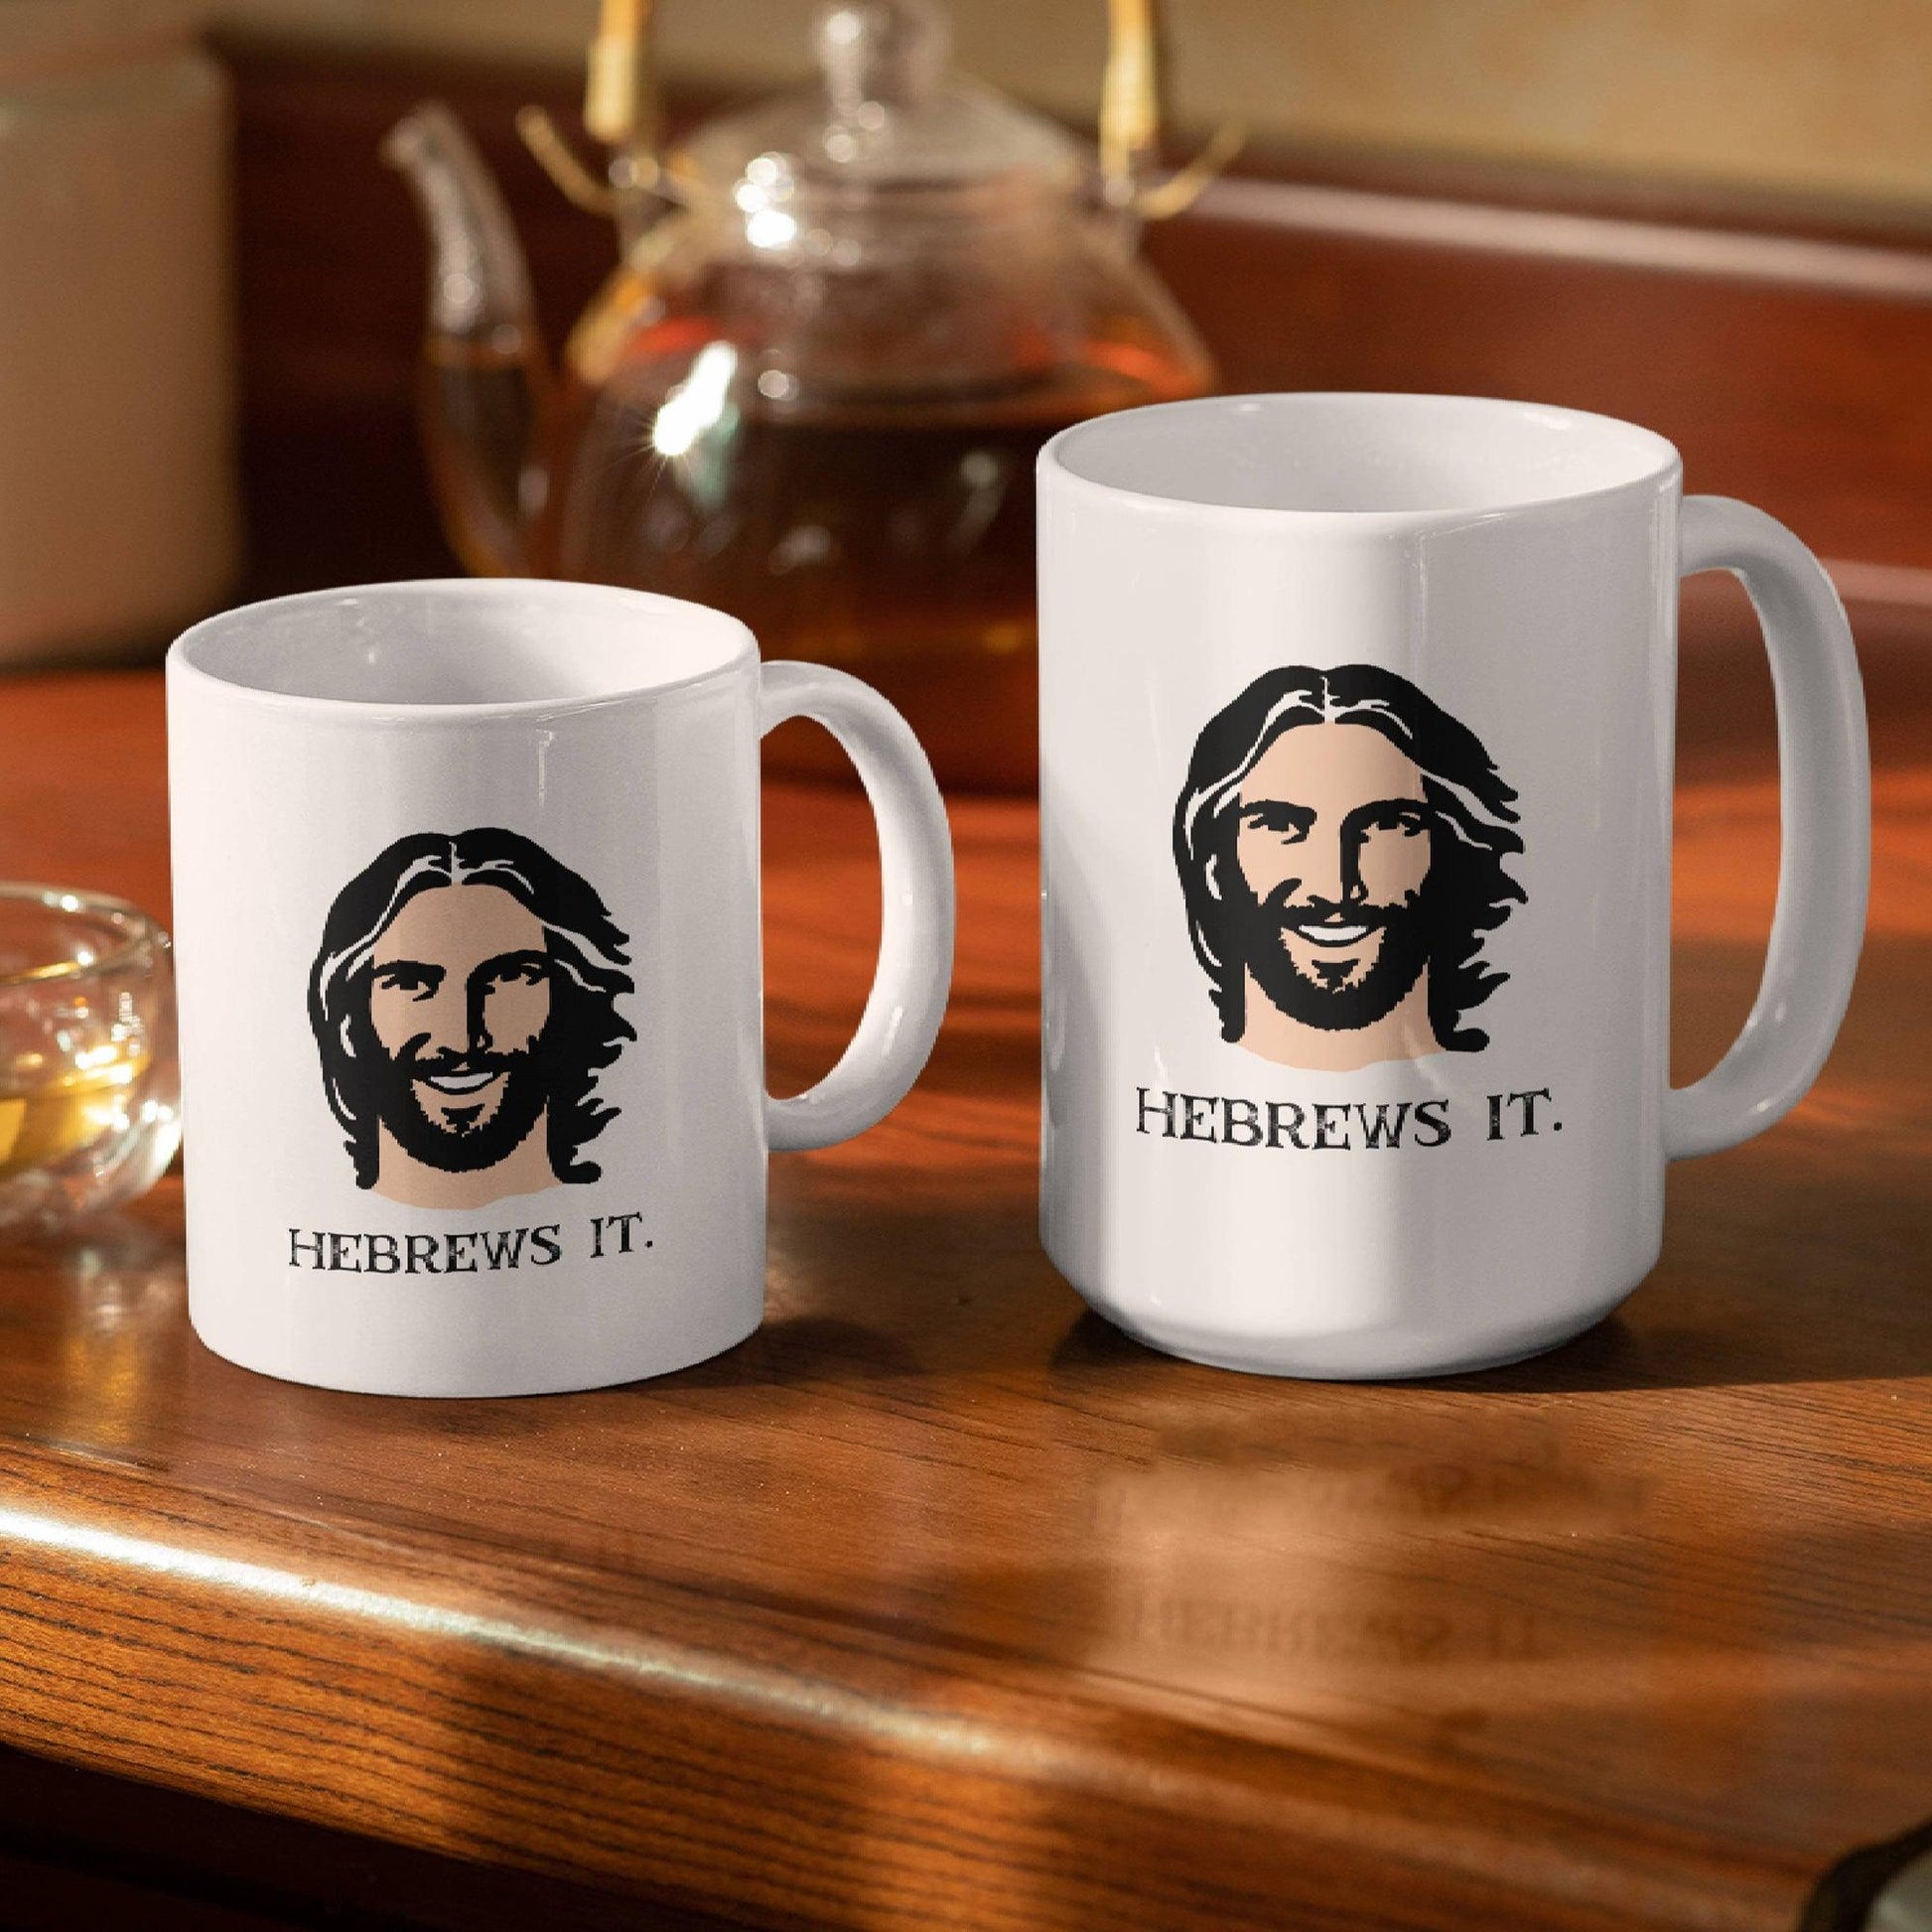 Wie bereitet Jesus seinen Kaffee? – Scherztasse - GiftHaus